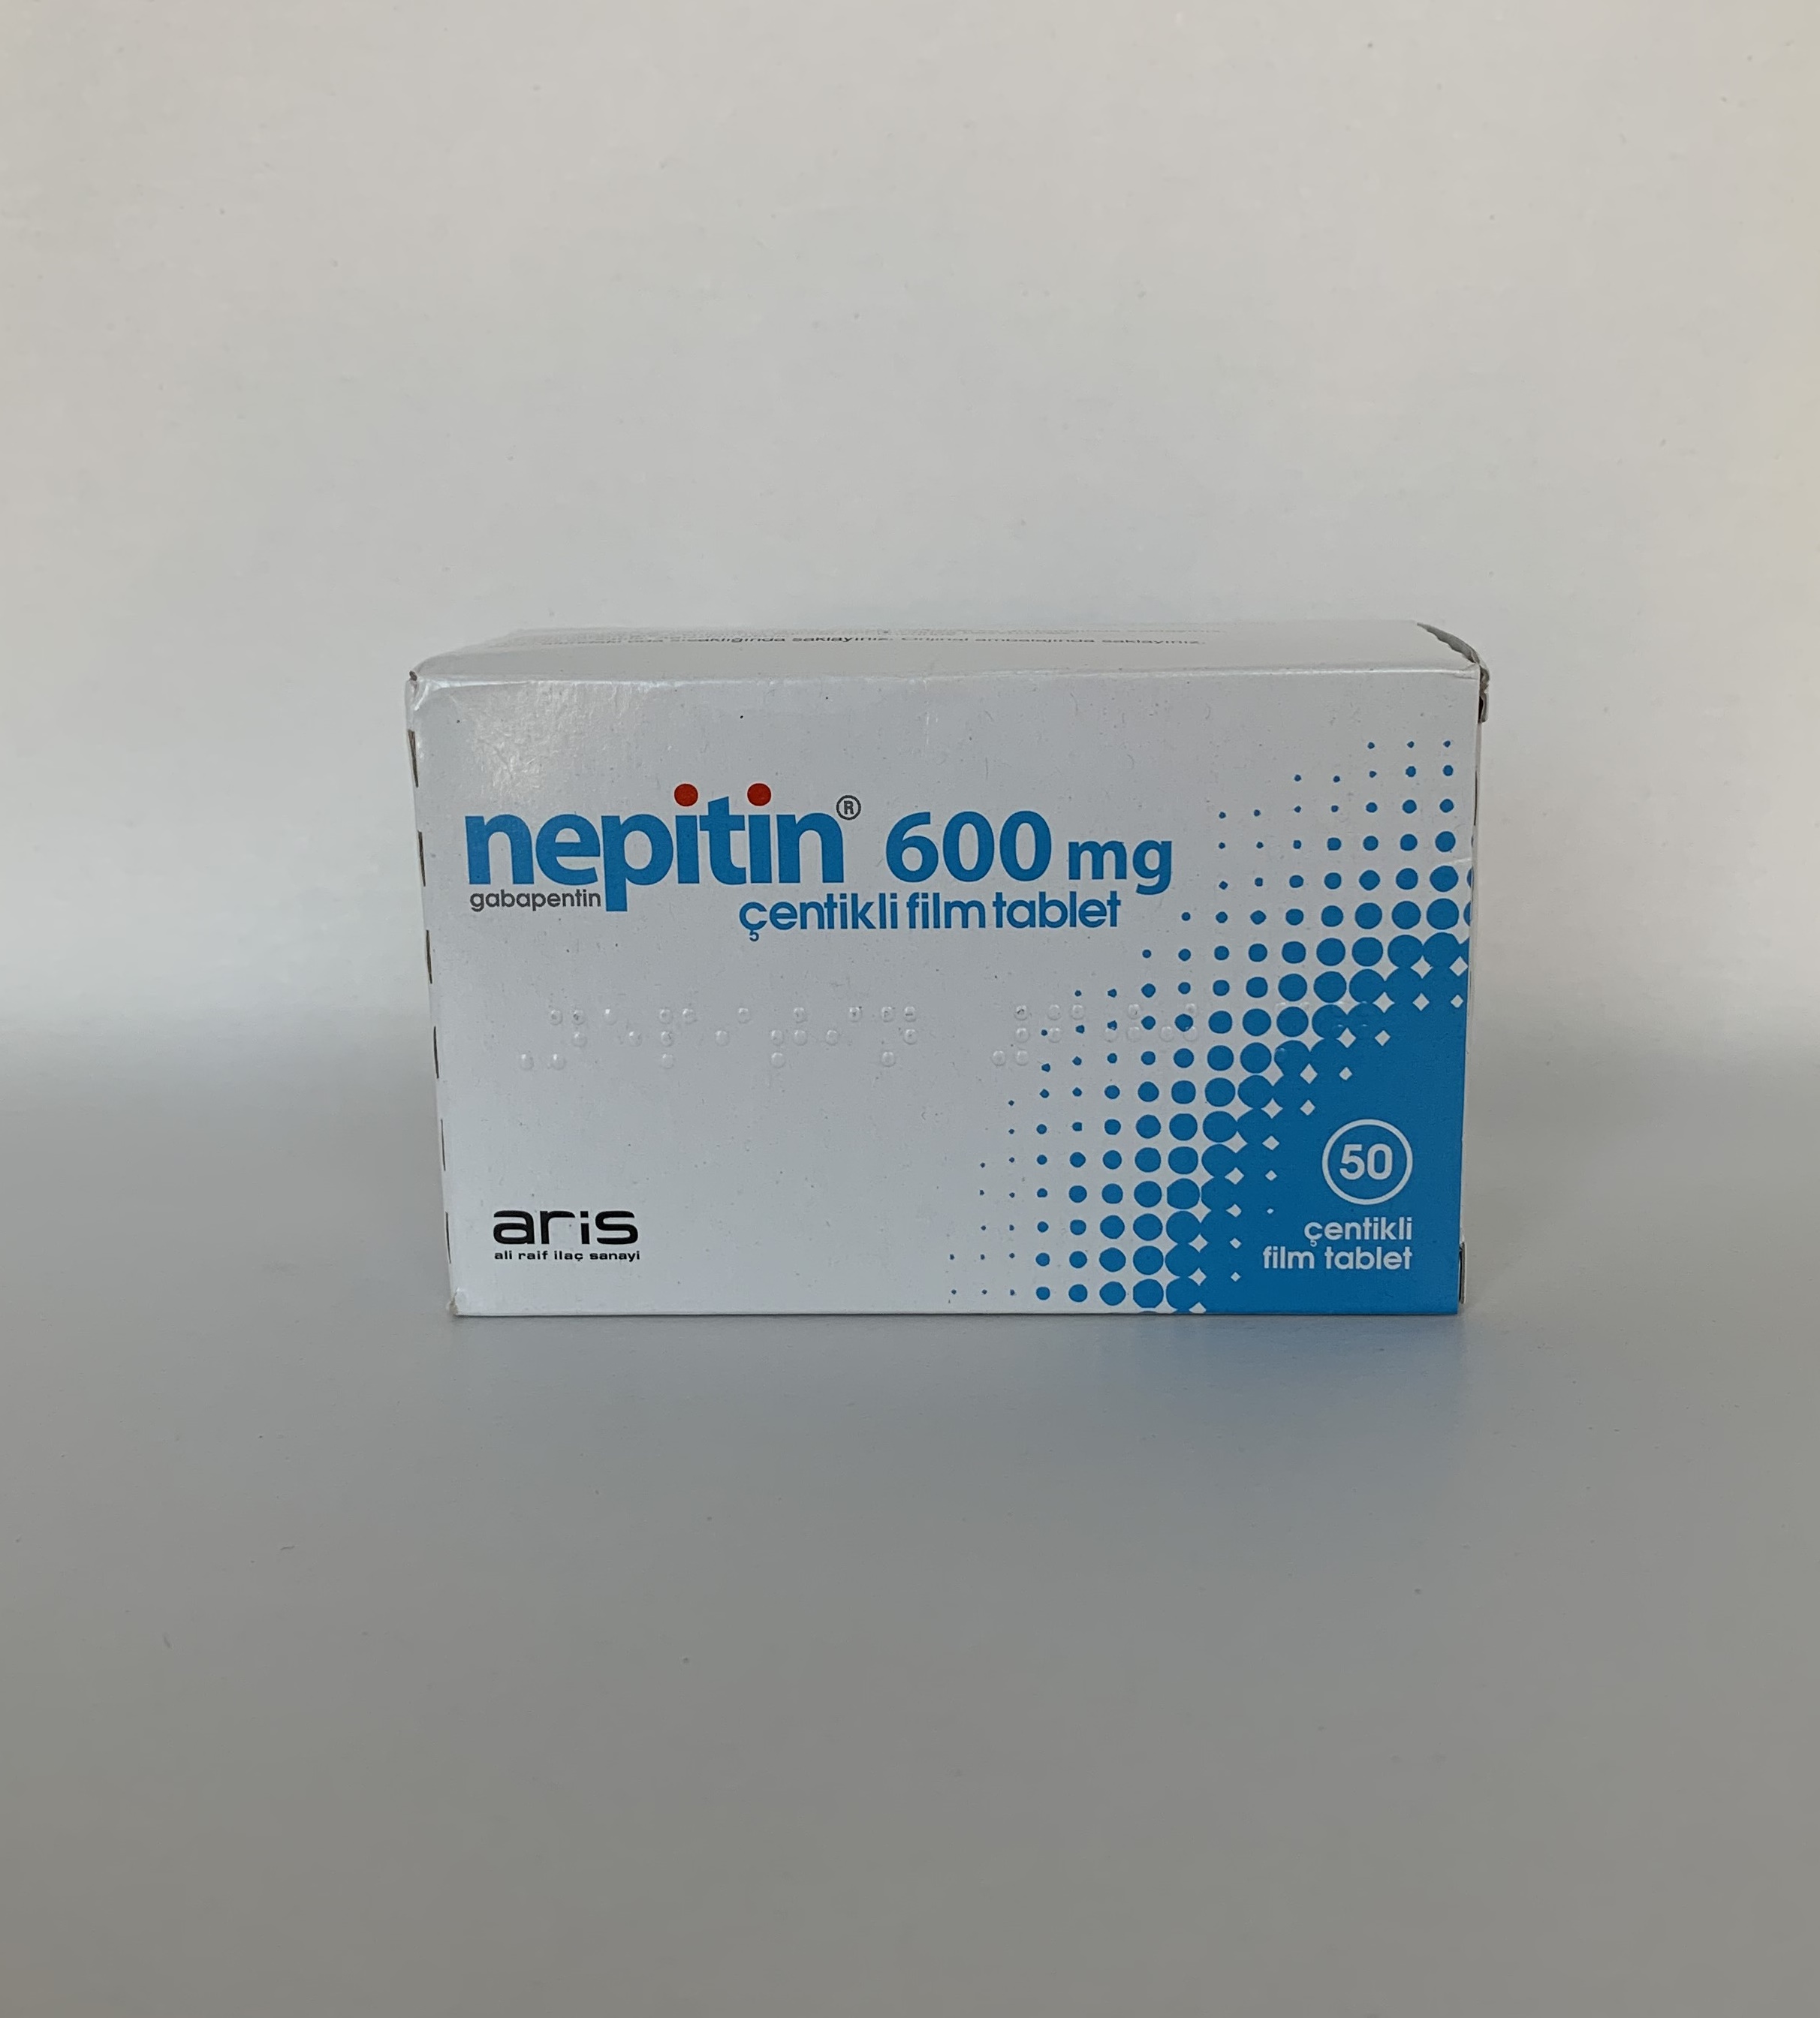 nepitin-600-mg-50-centikli-film-tablet